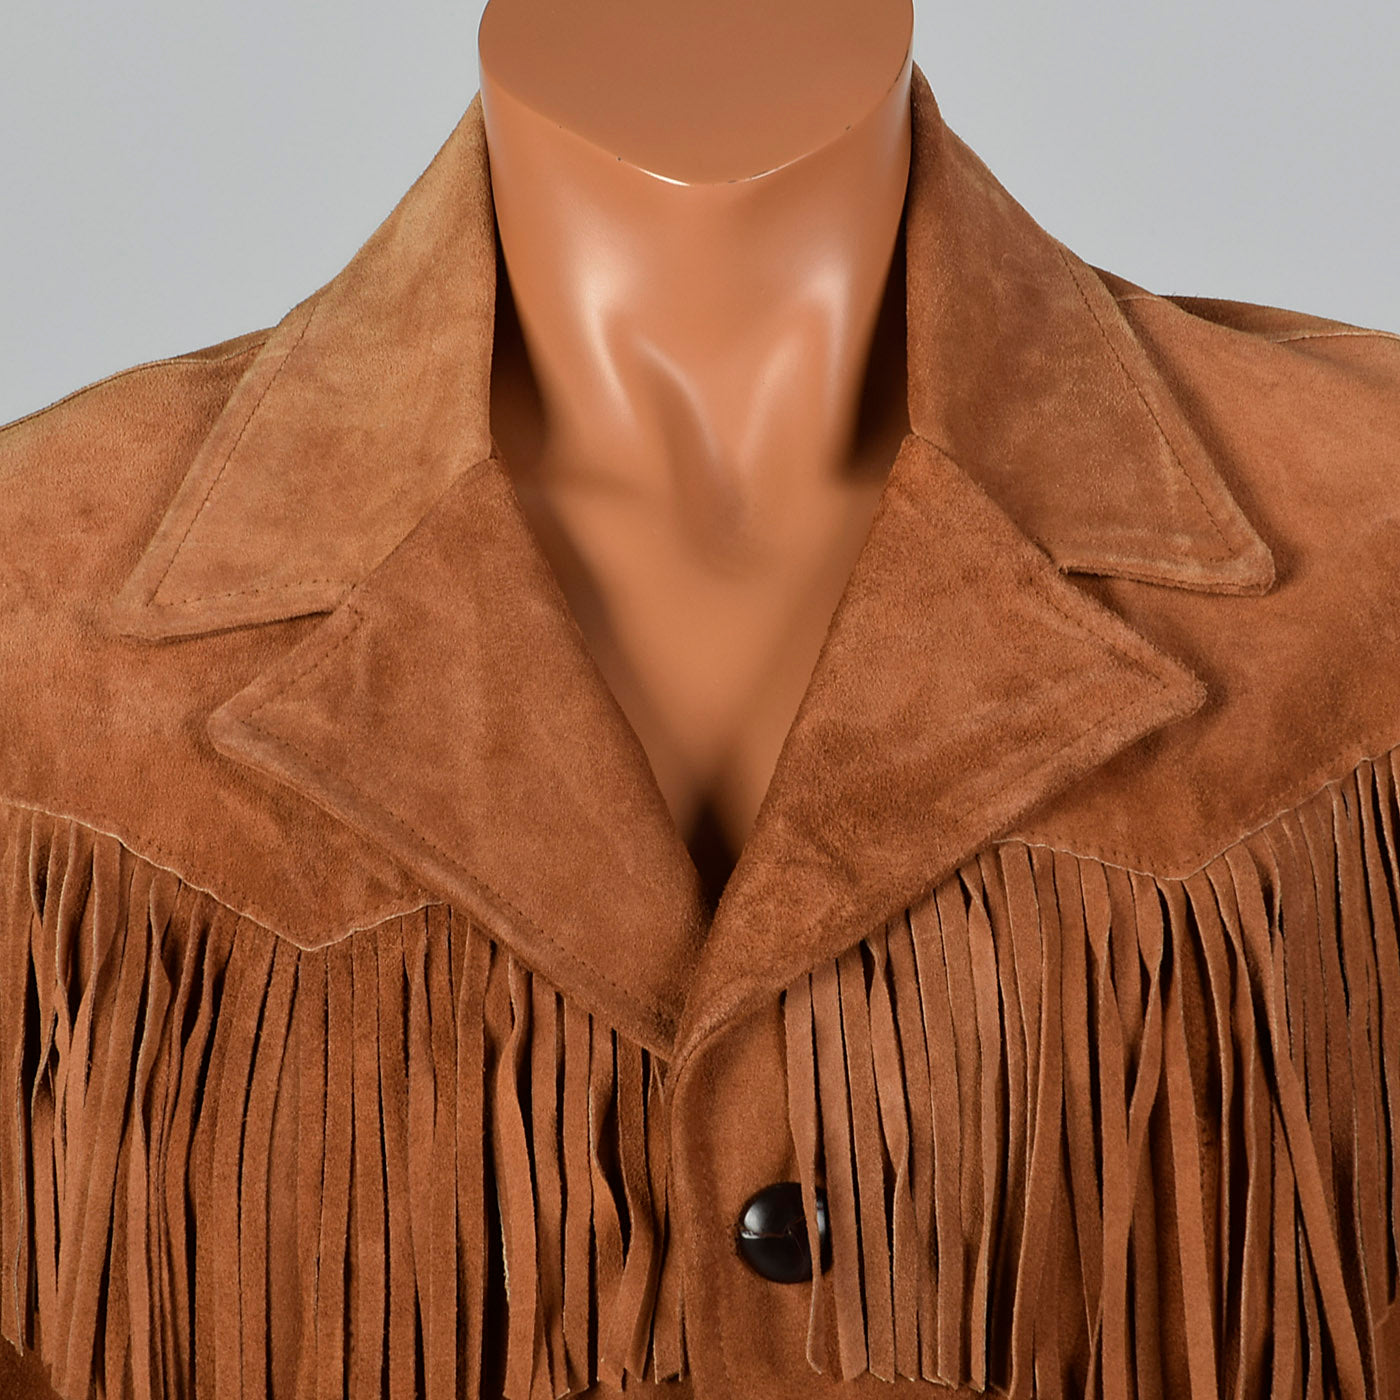 1970s Mens Brown Leather Fringe Jacket